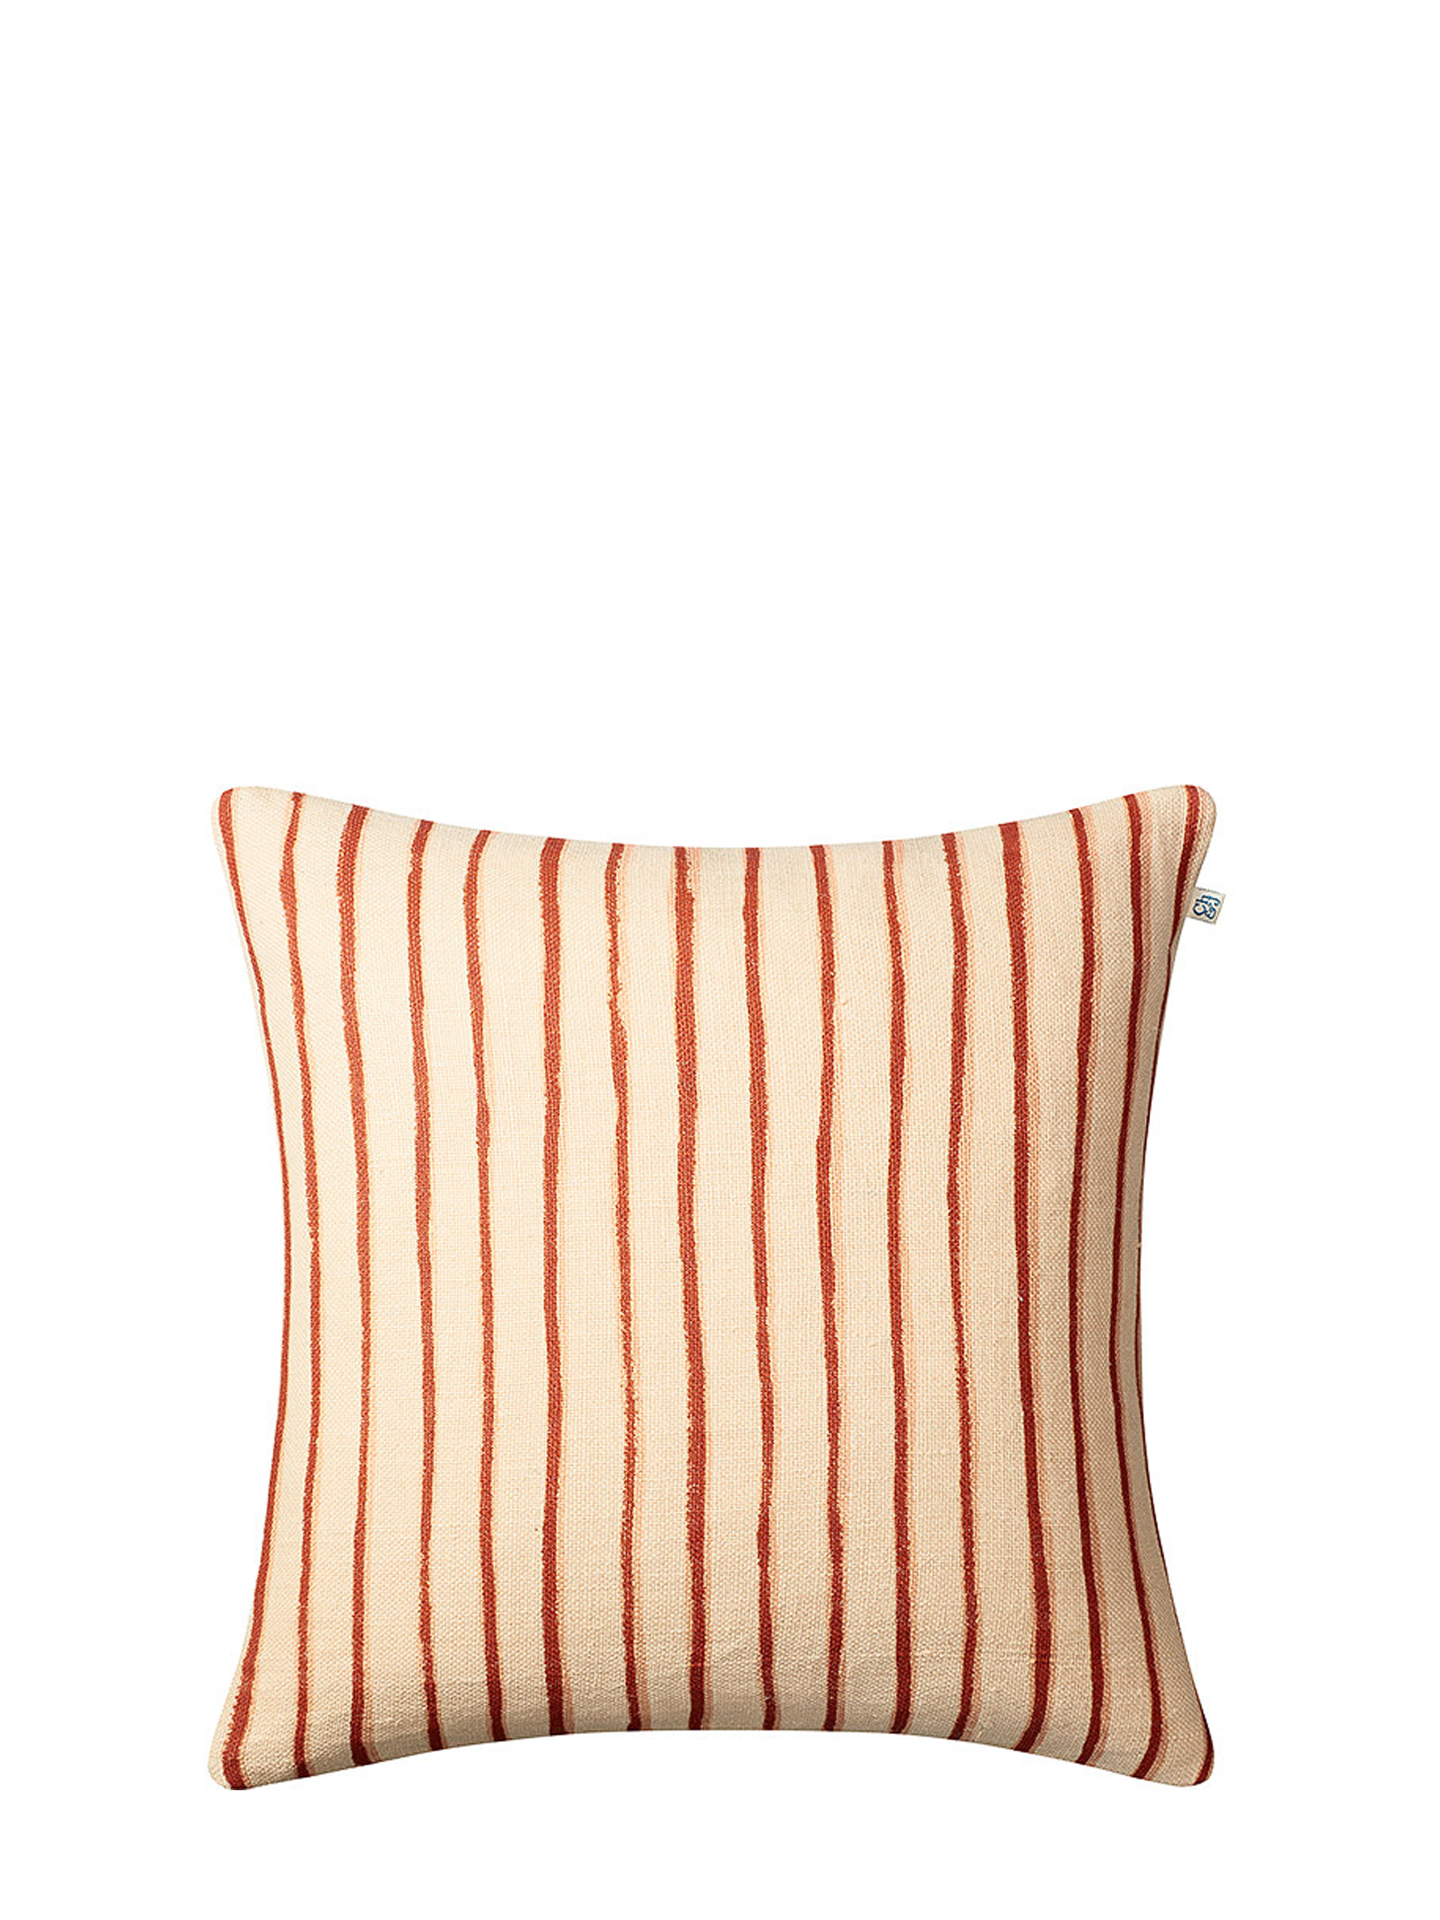 Jaipur Stripe Cushion Cover, Apricot Orange/Rose